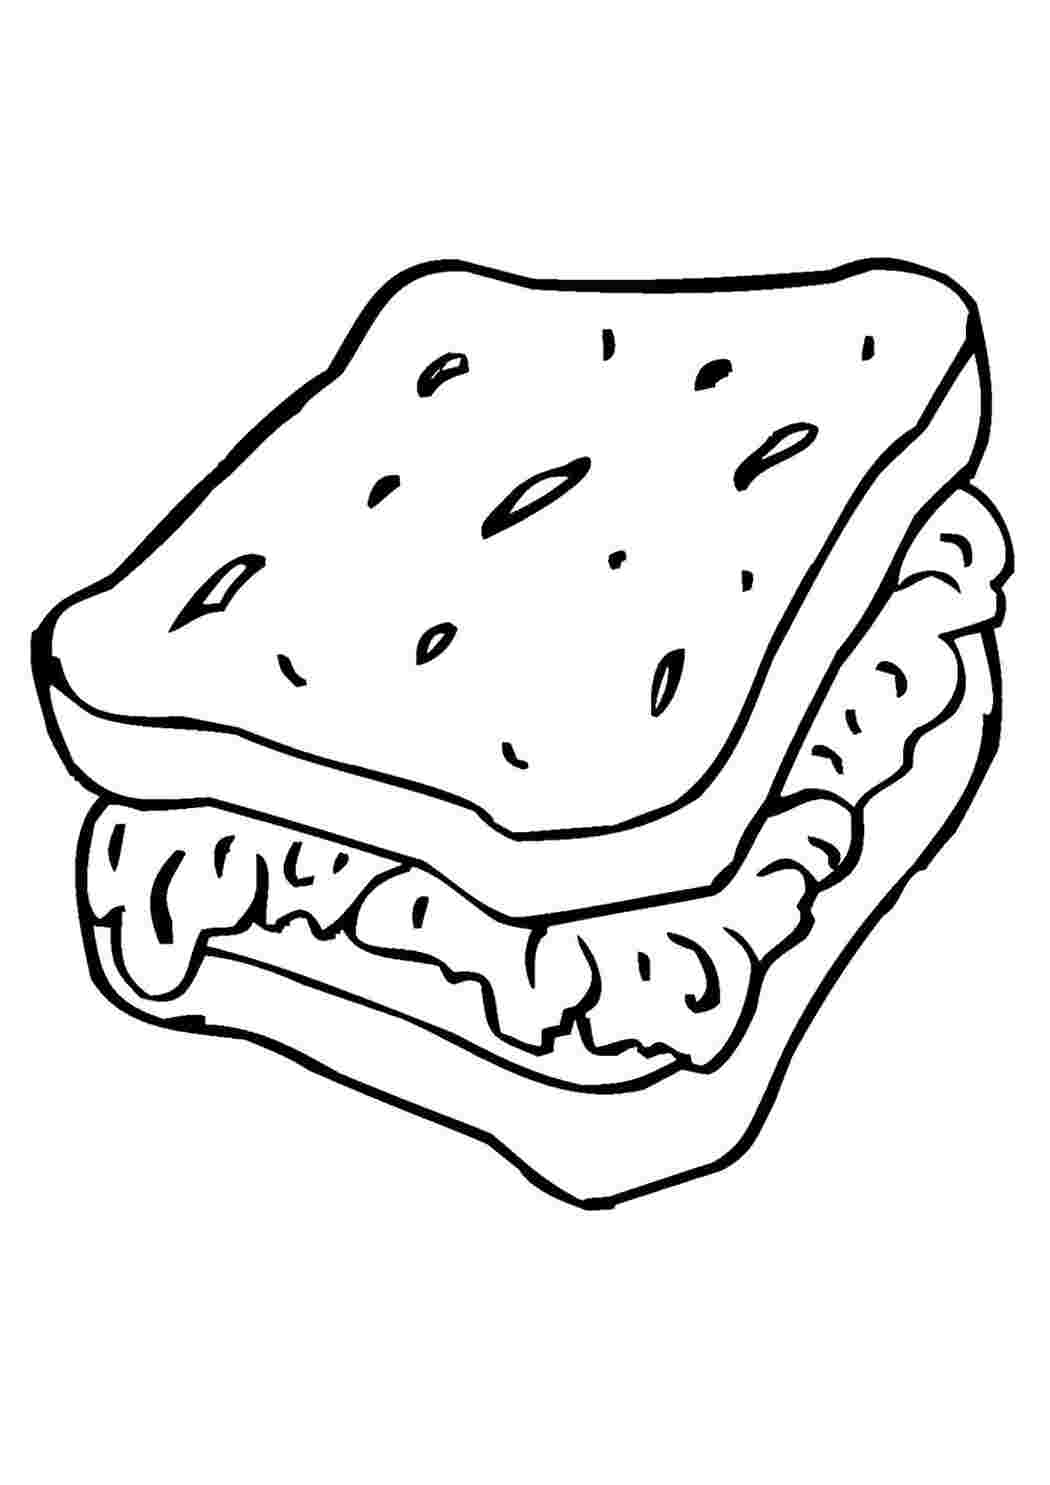 Рисунок «S-гофр» для ворот из сэндвич-панелей